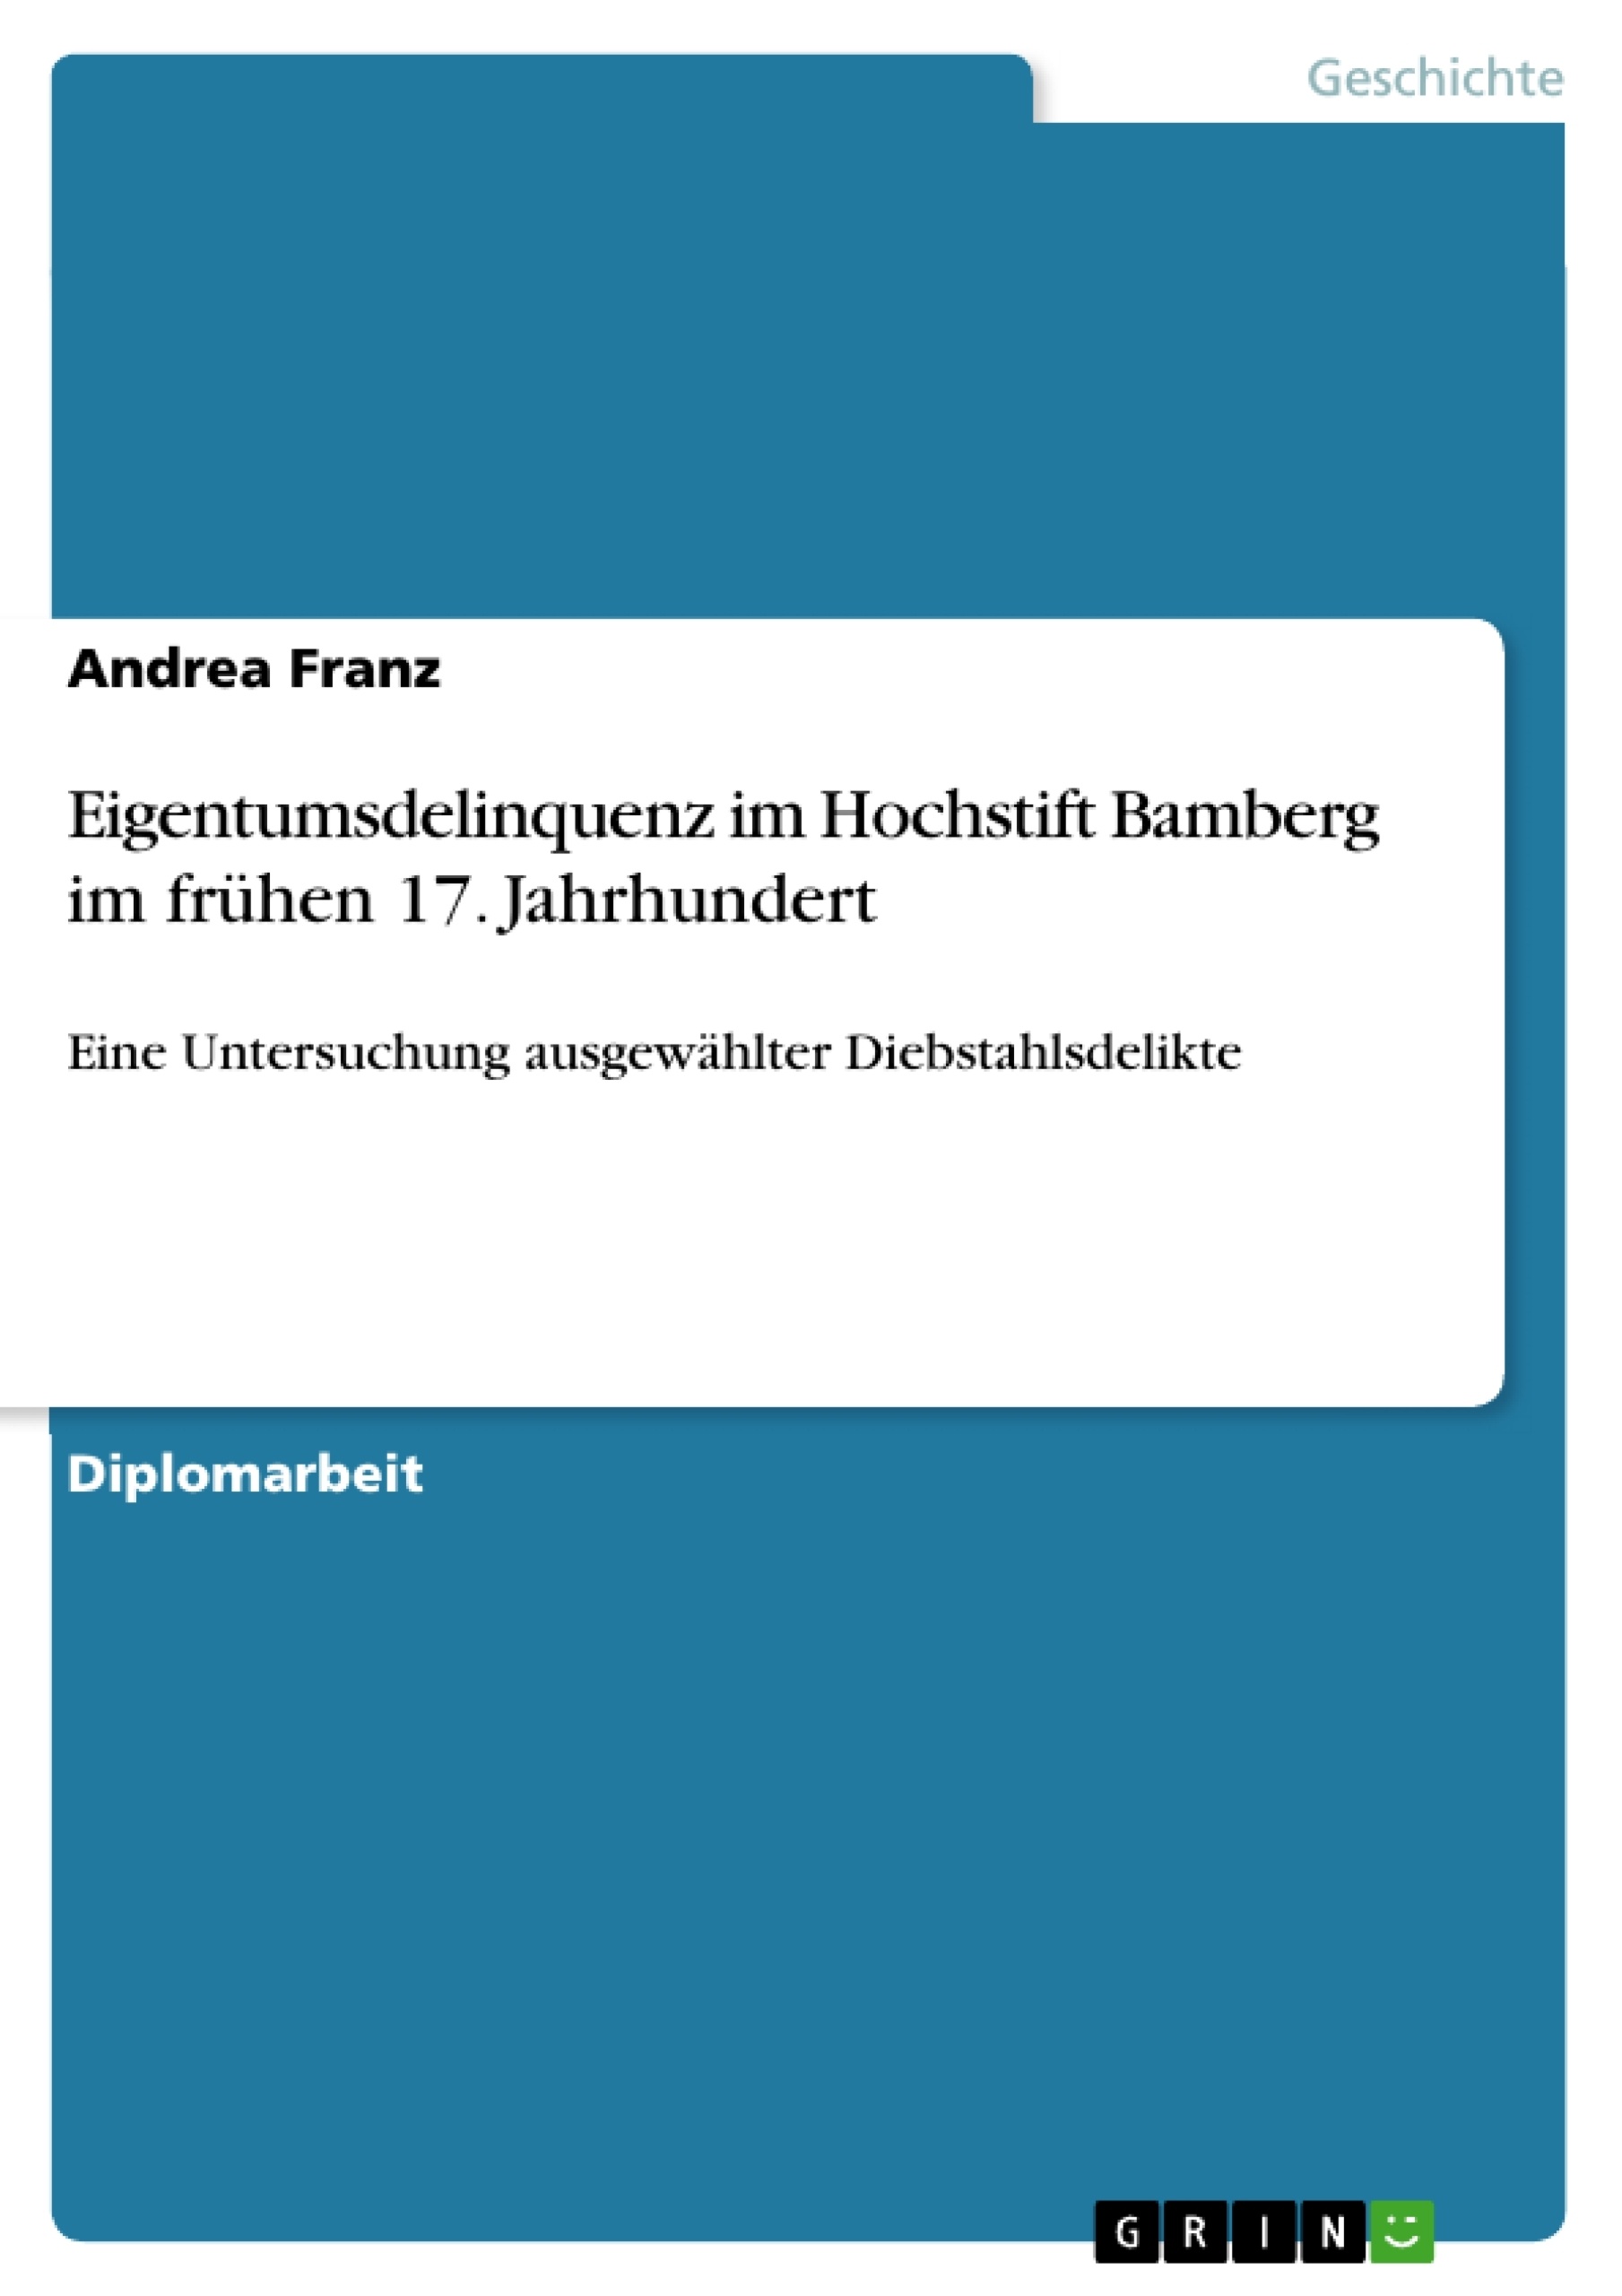 Título: Eigentumsdelinquenz im Hochstift Bamberg im frühen 17. Jahrhundert